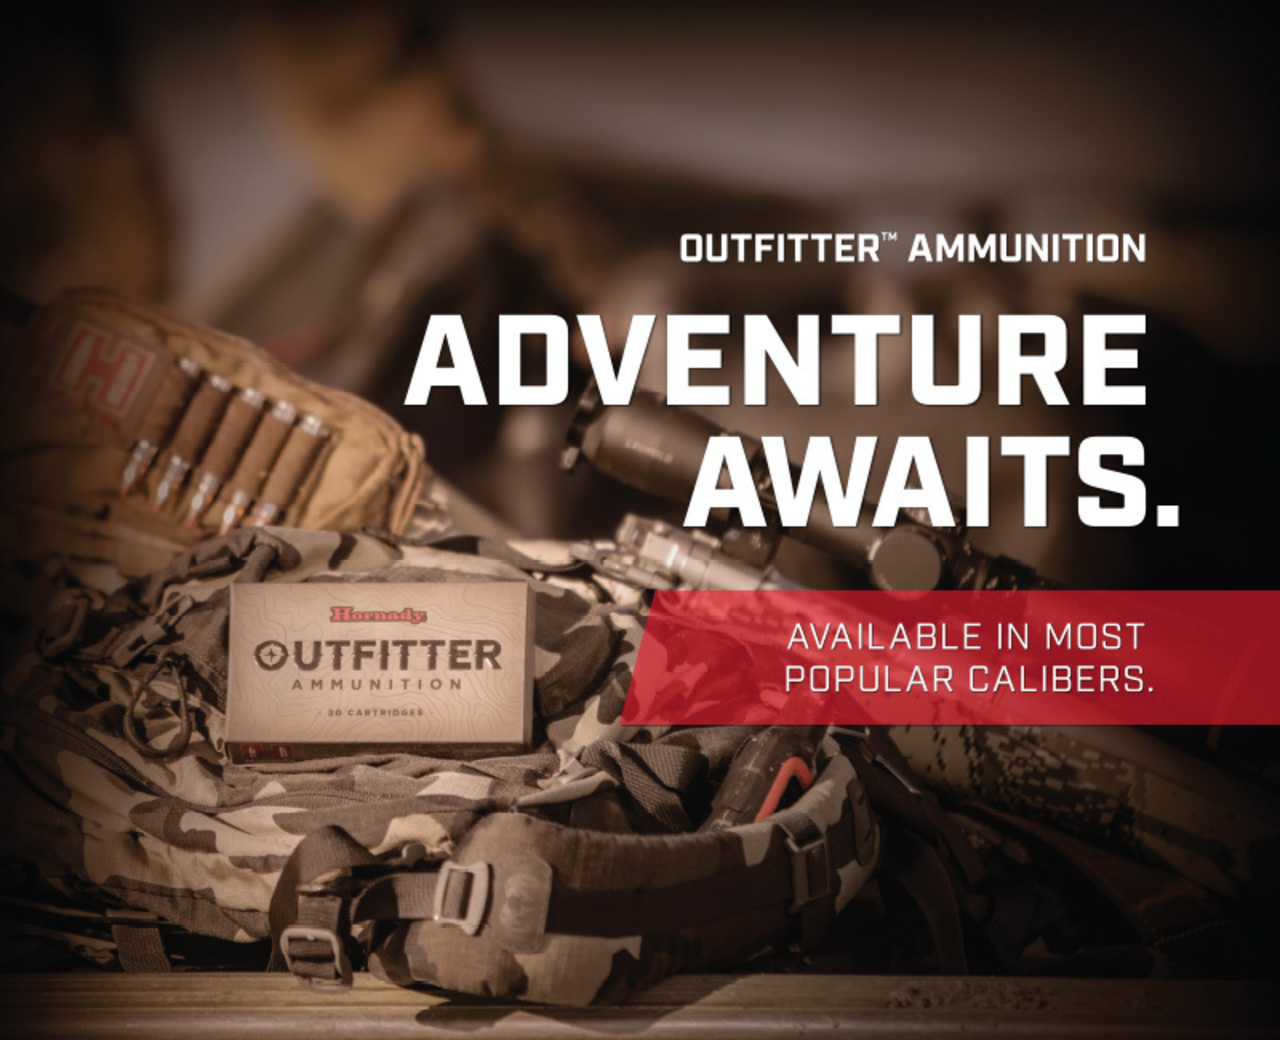 Outfitter Ammunition: Adventure Awaits